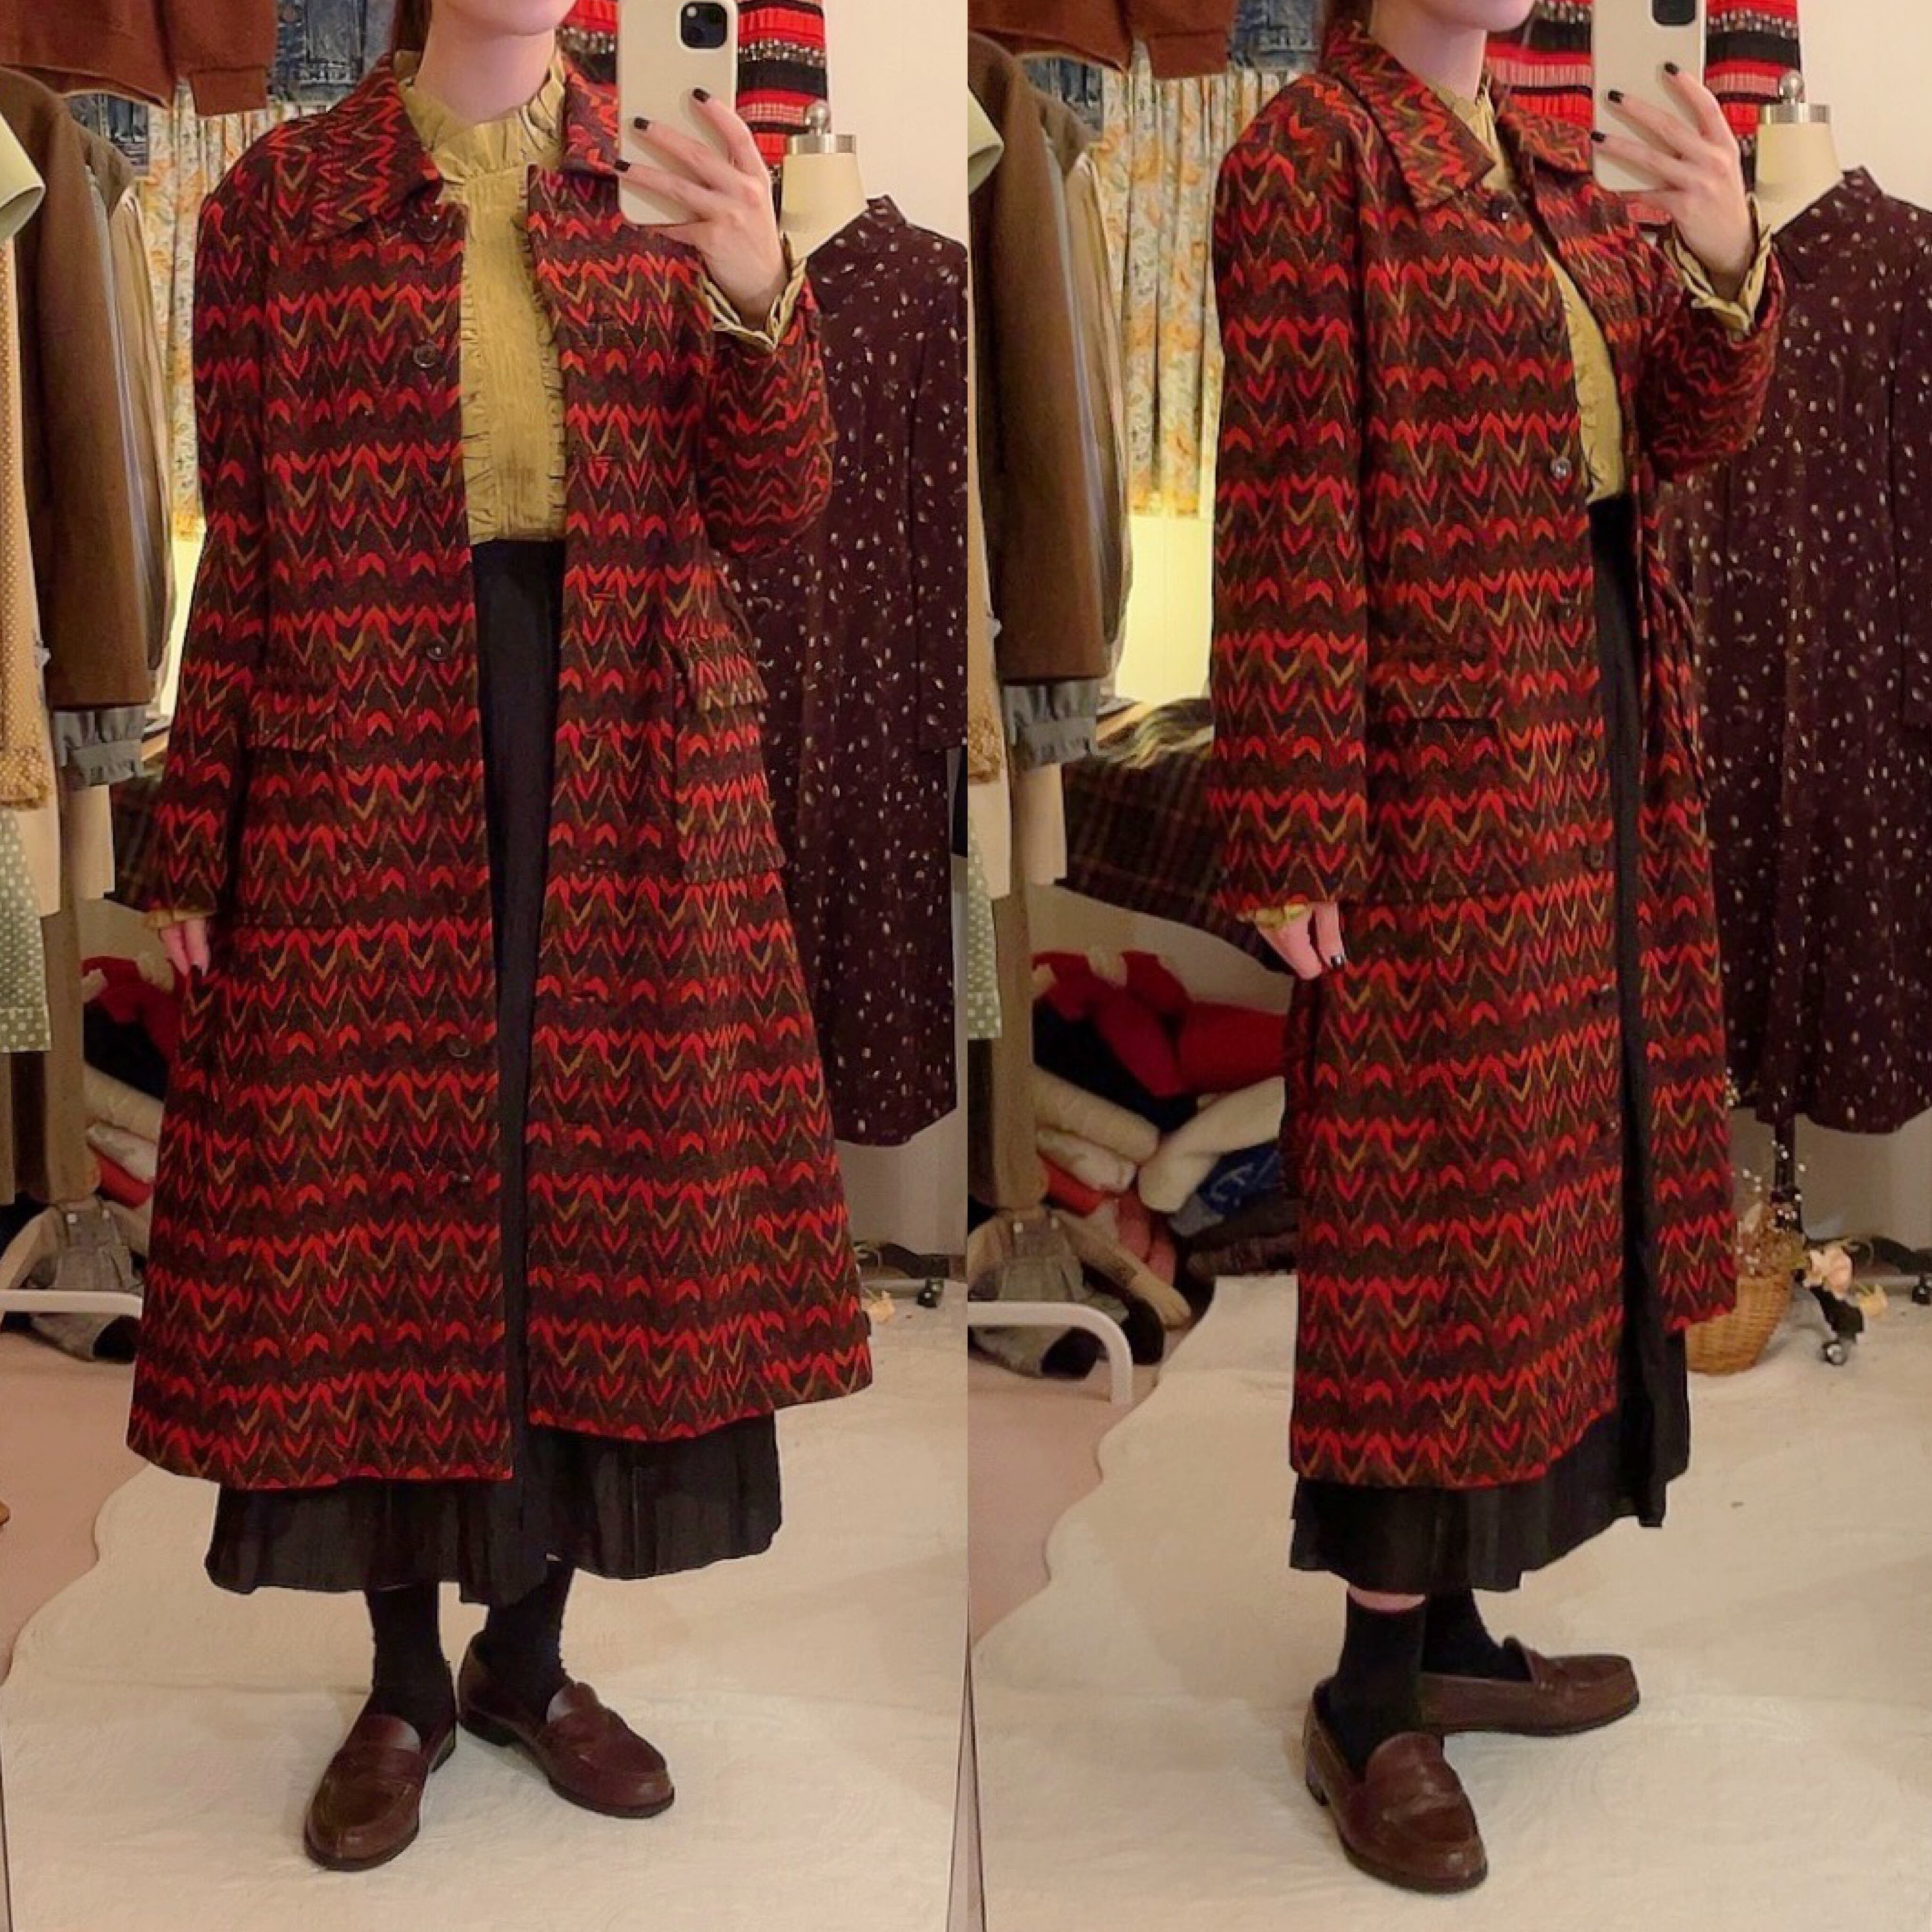 70s jacquard knit coat